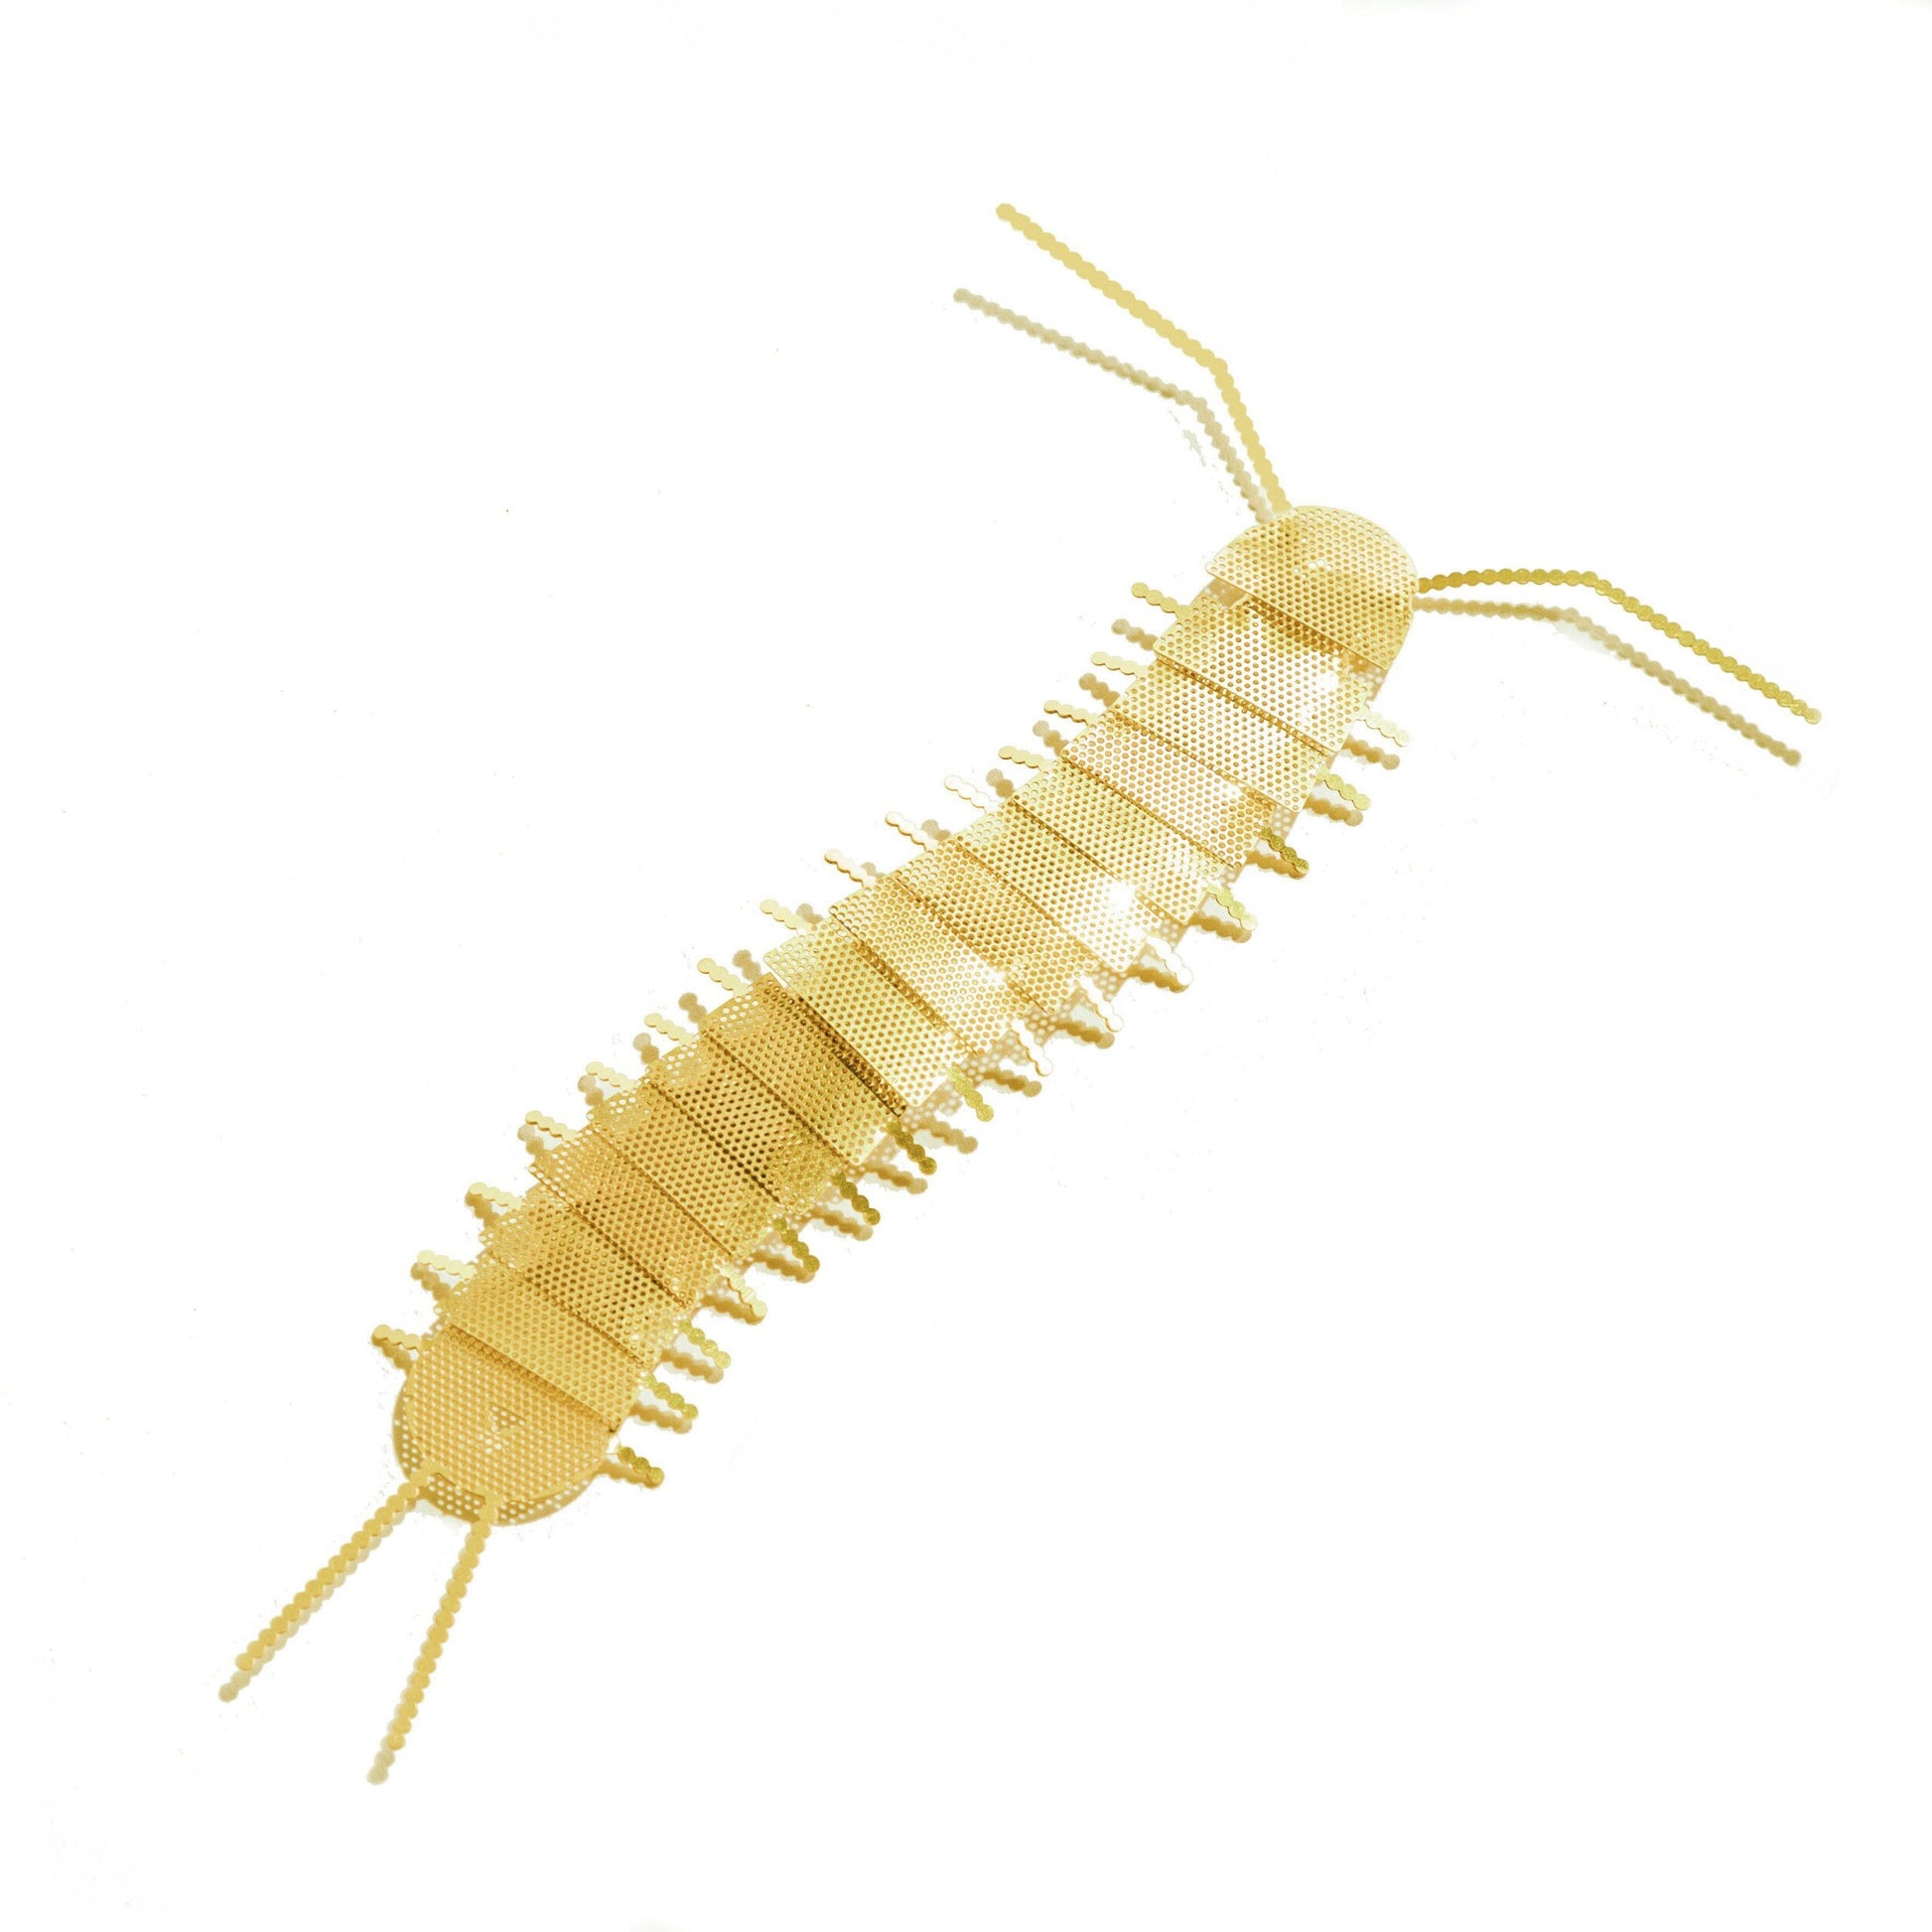 Fundamental Berlin Gold Flatmate- Centipede